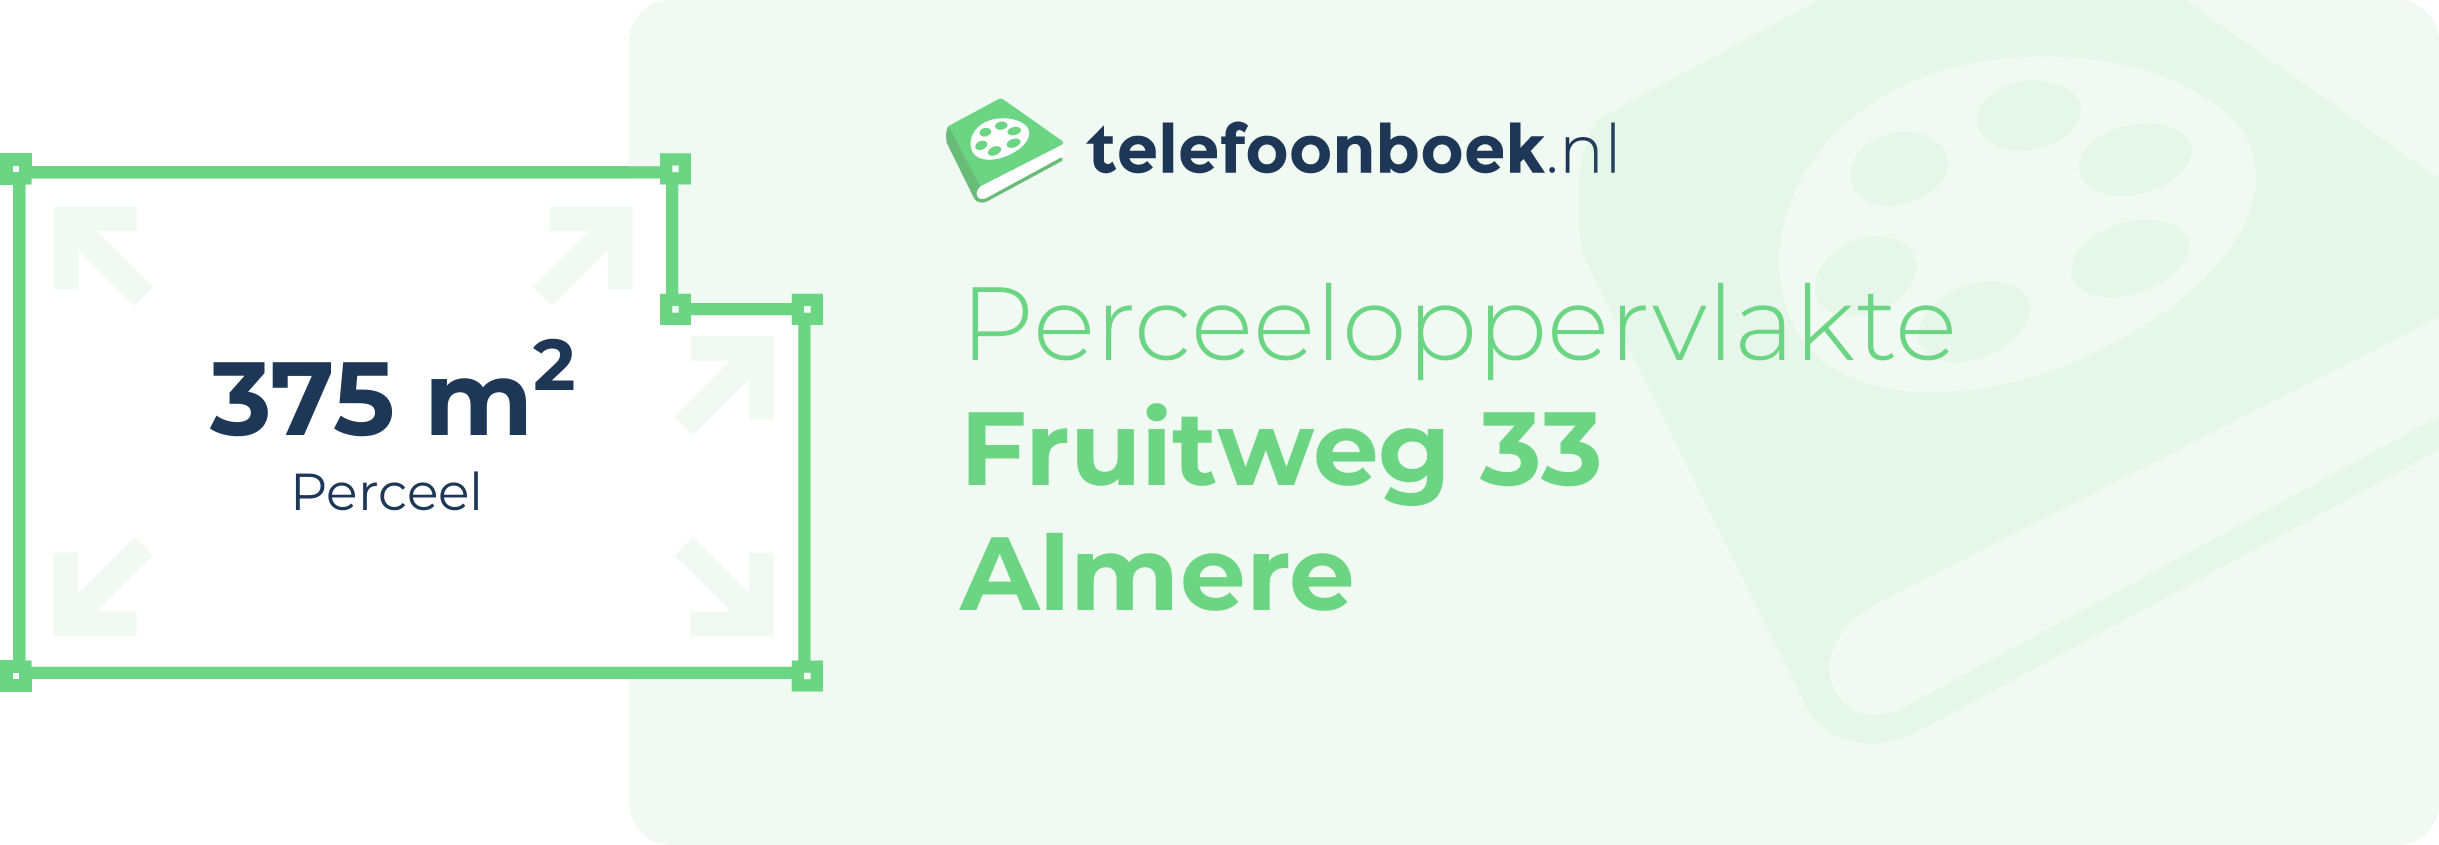 Perceeloppervlakte Fruitweg 33 Almere